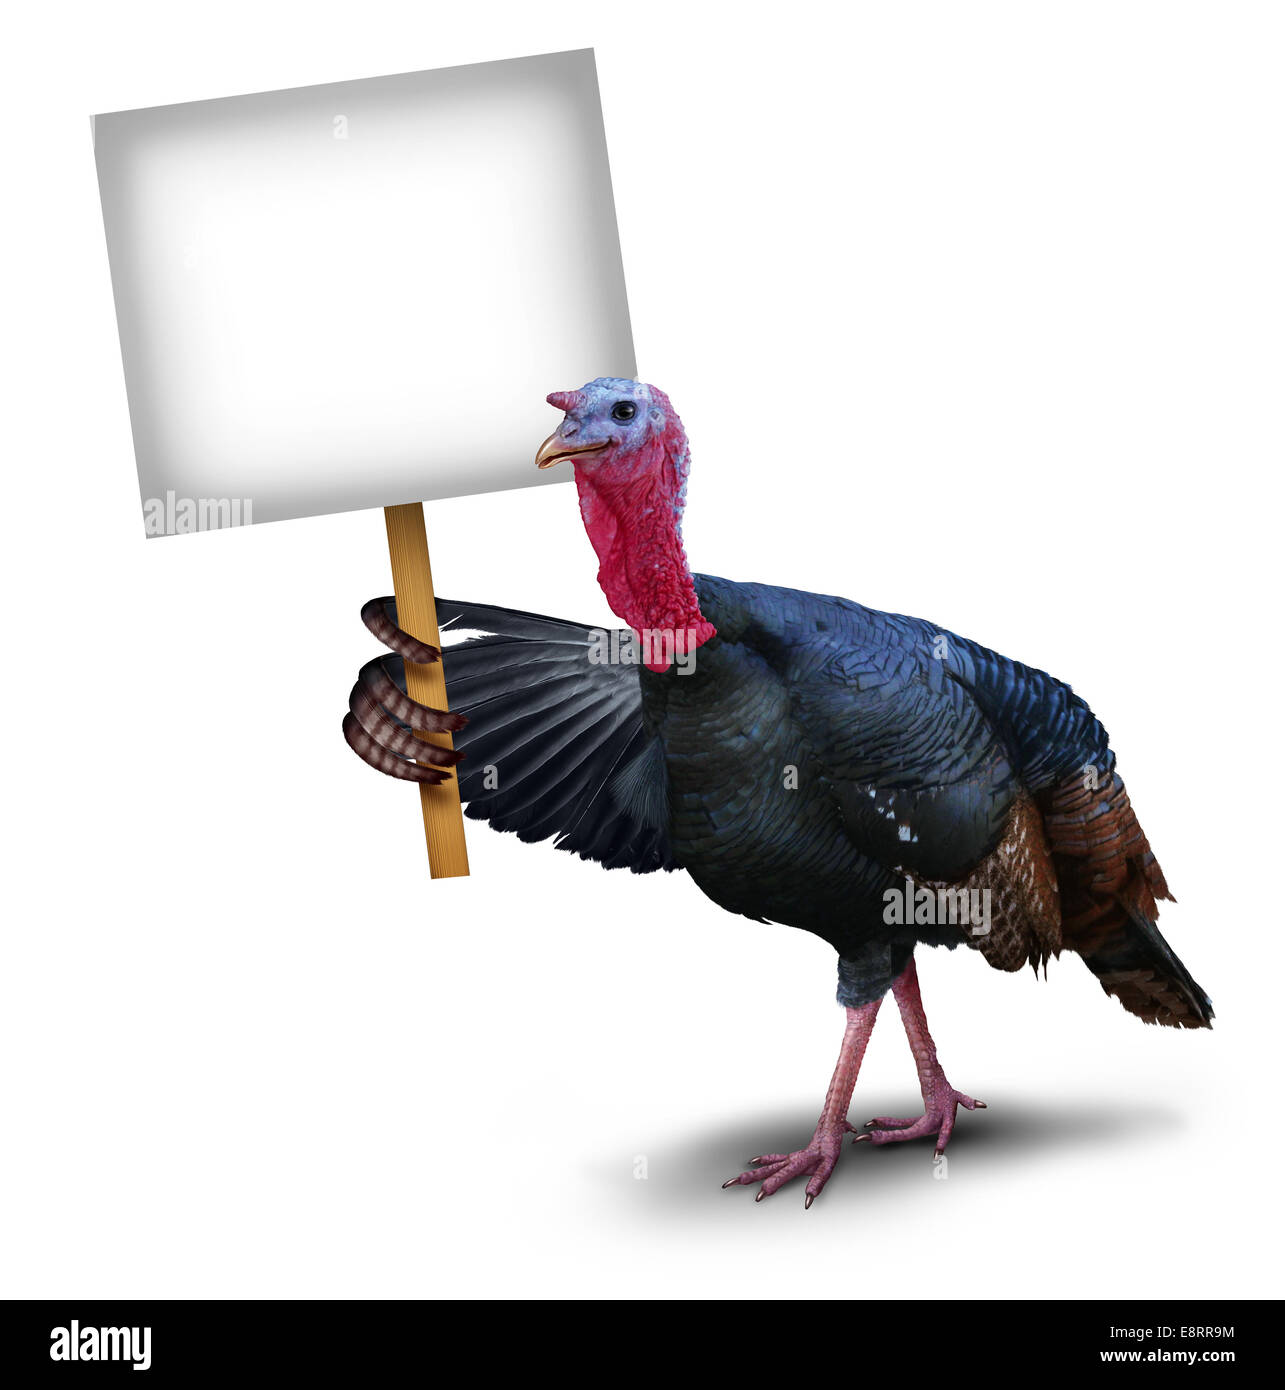 La Turquie signe d'oiseaux concept comme un symbole de caractère de grâce pouvant contenir jusqu'à son aile un signe Plaque sur fond blanc représentant l'automne Célébration saisonnière de la faune et de thème. Banque D'Images